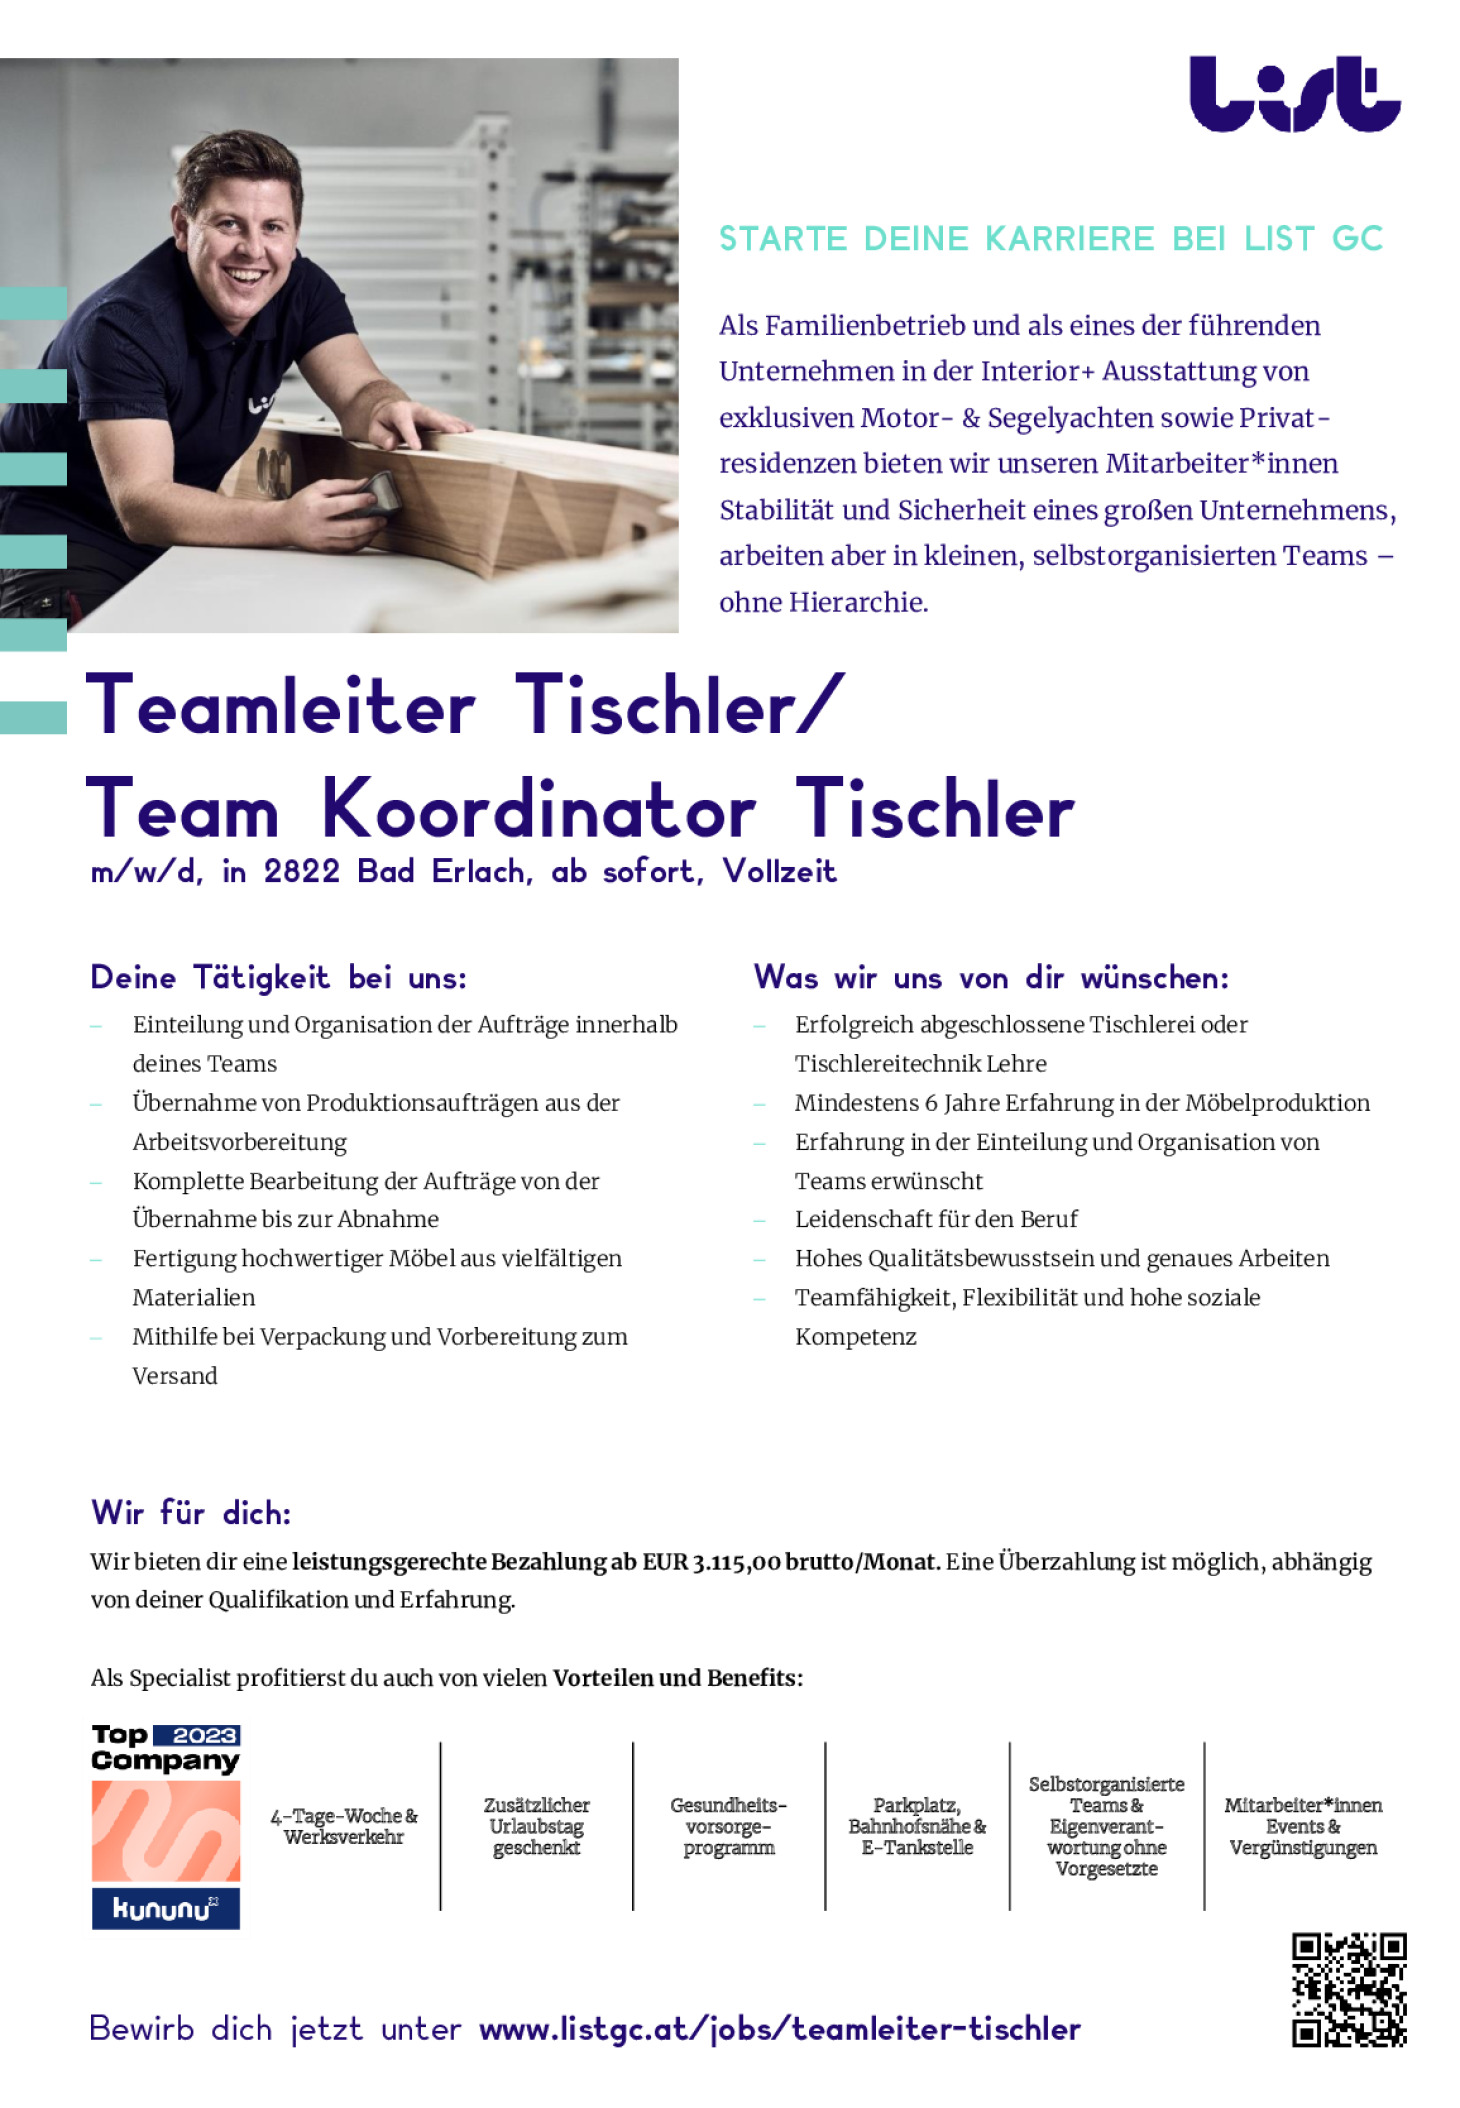 Teamleiter Tischler/ Team Koordinator Tischler (m/w/d)